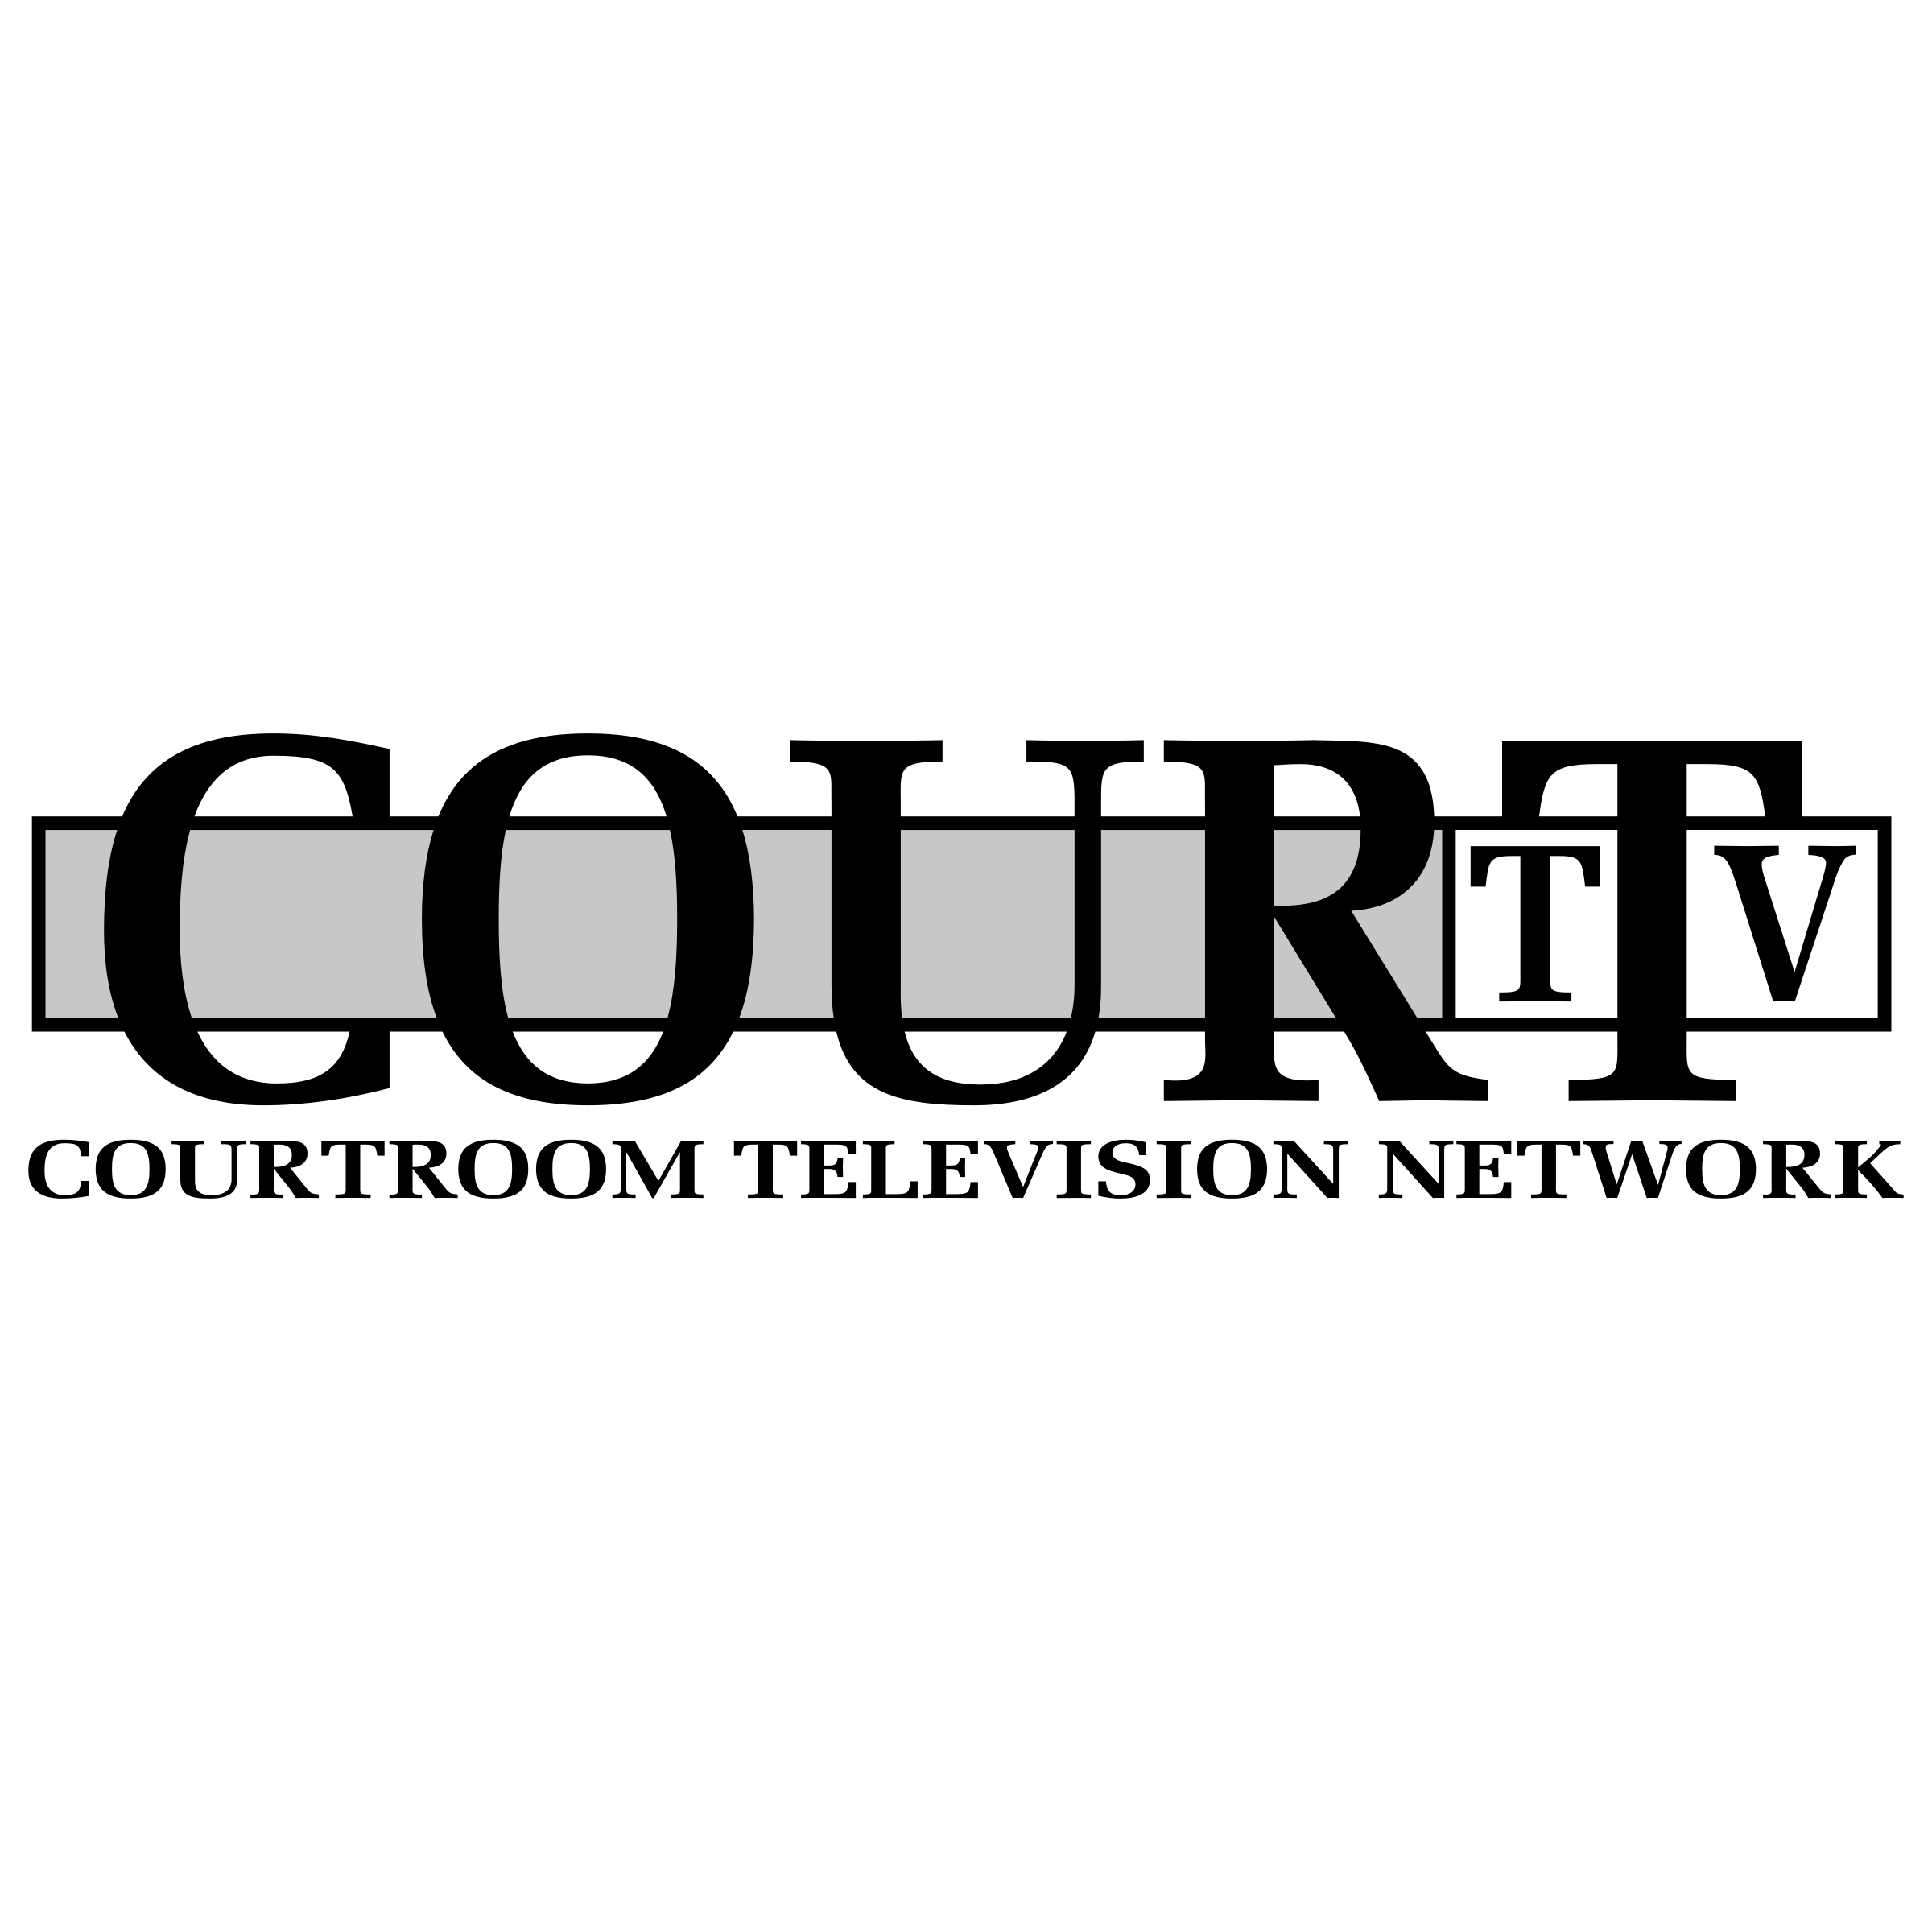 Courtroom Logo - Court TV Logo PNG Transparent & SVG Vector